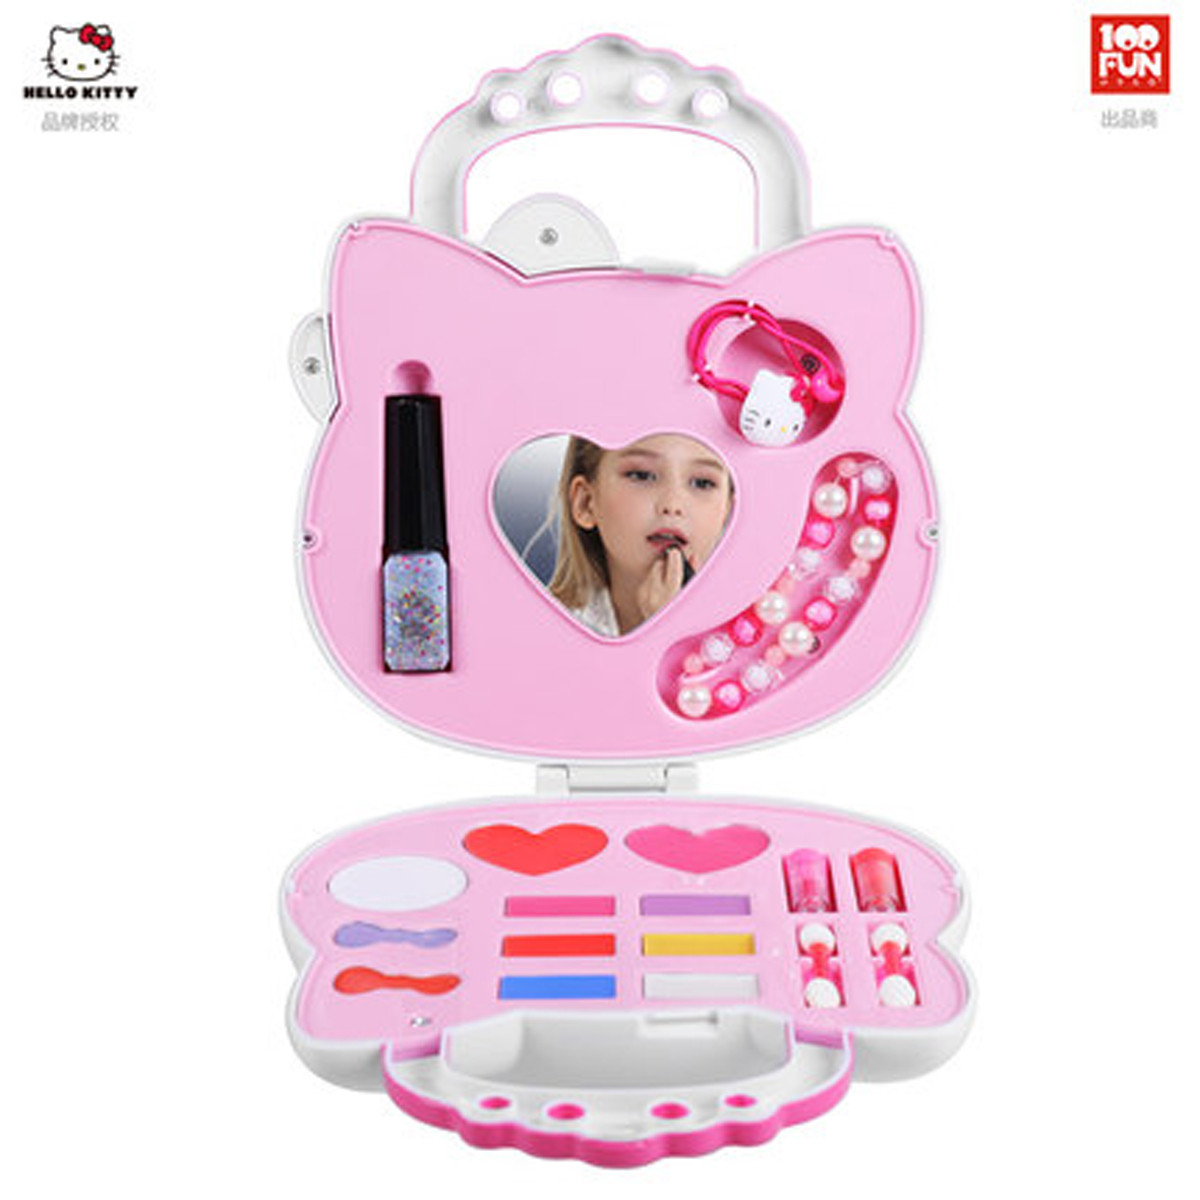 凯蒂猫儿童化妆品套装安全无毒口红公主彩妆盒小女孩玩具生日礼物